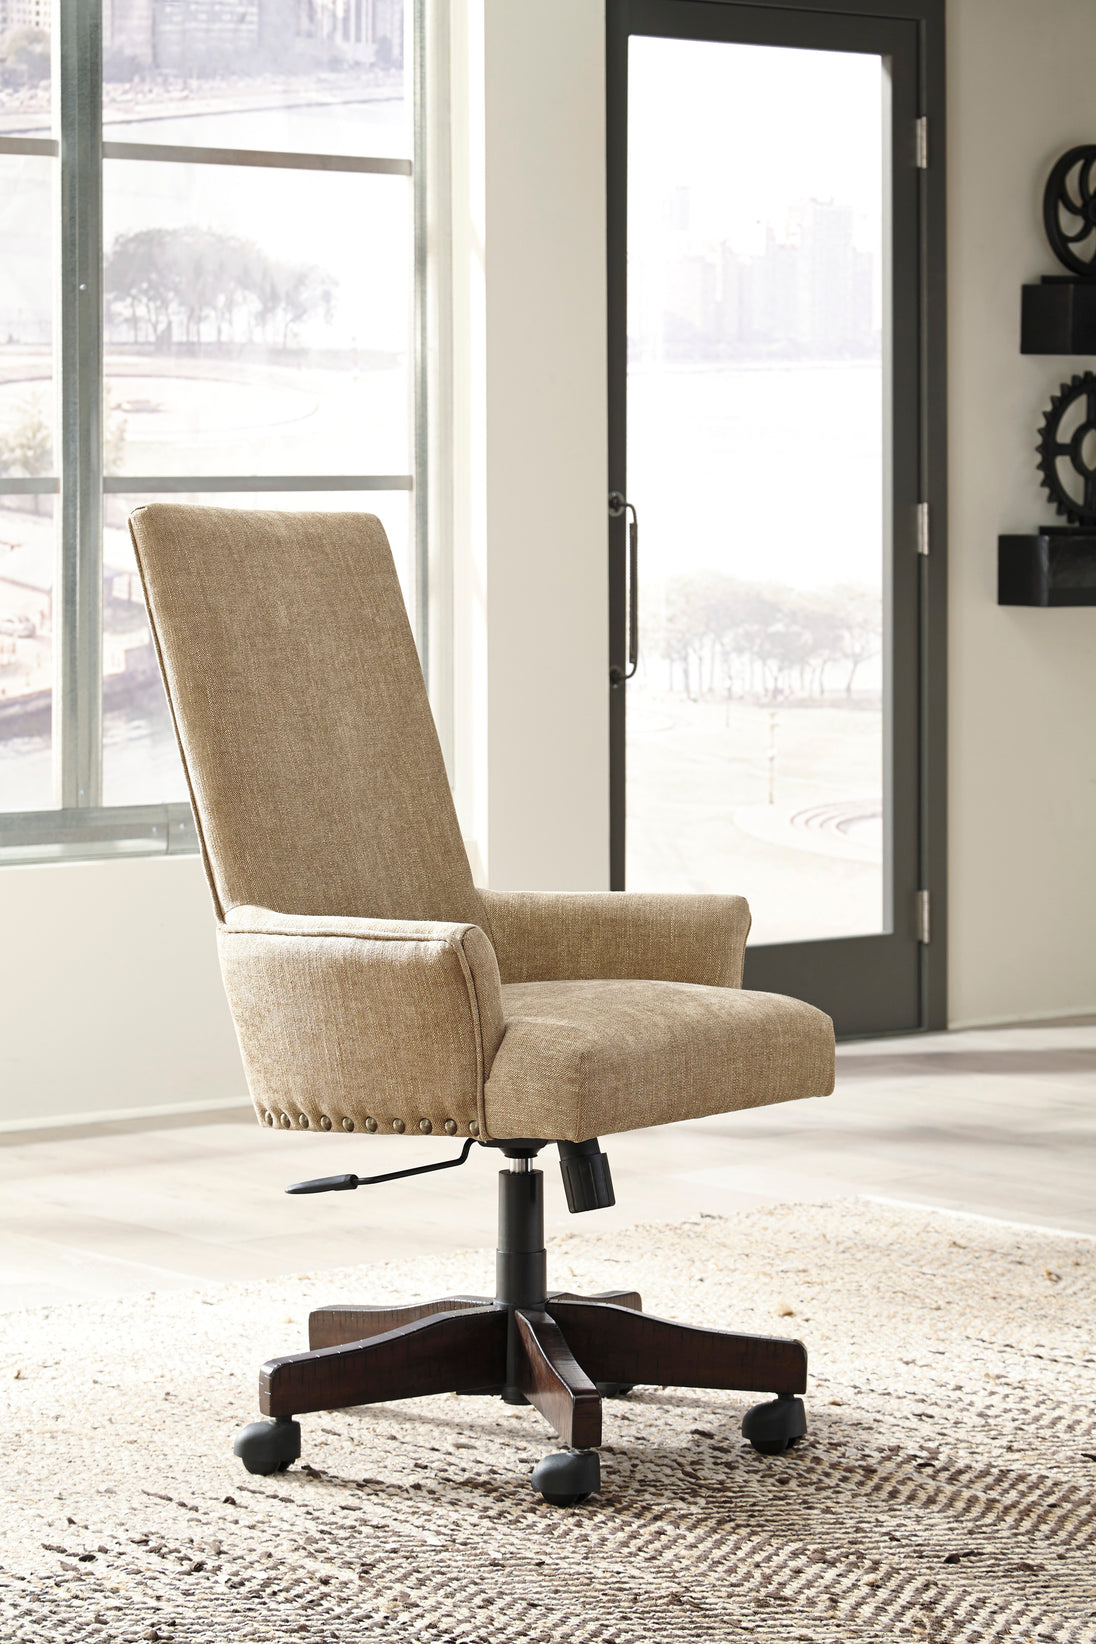 Baldridge Home Office Desk Chair - Light Brown - Furniture Depot (6747929837741)